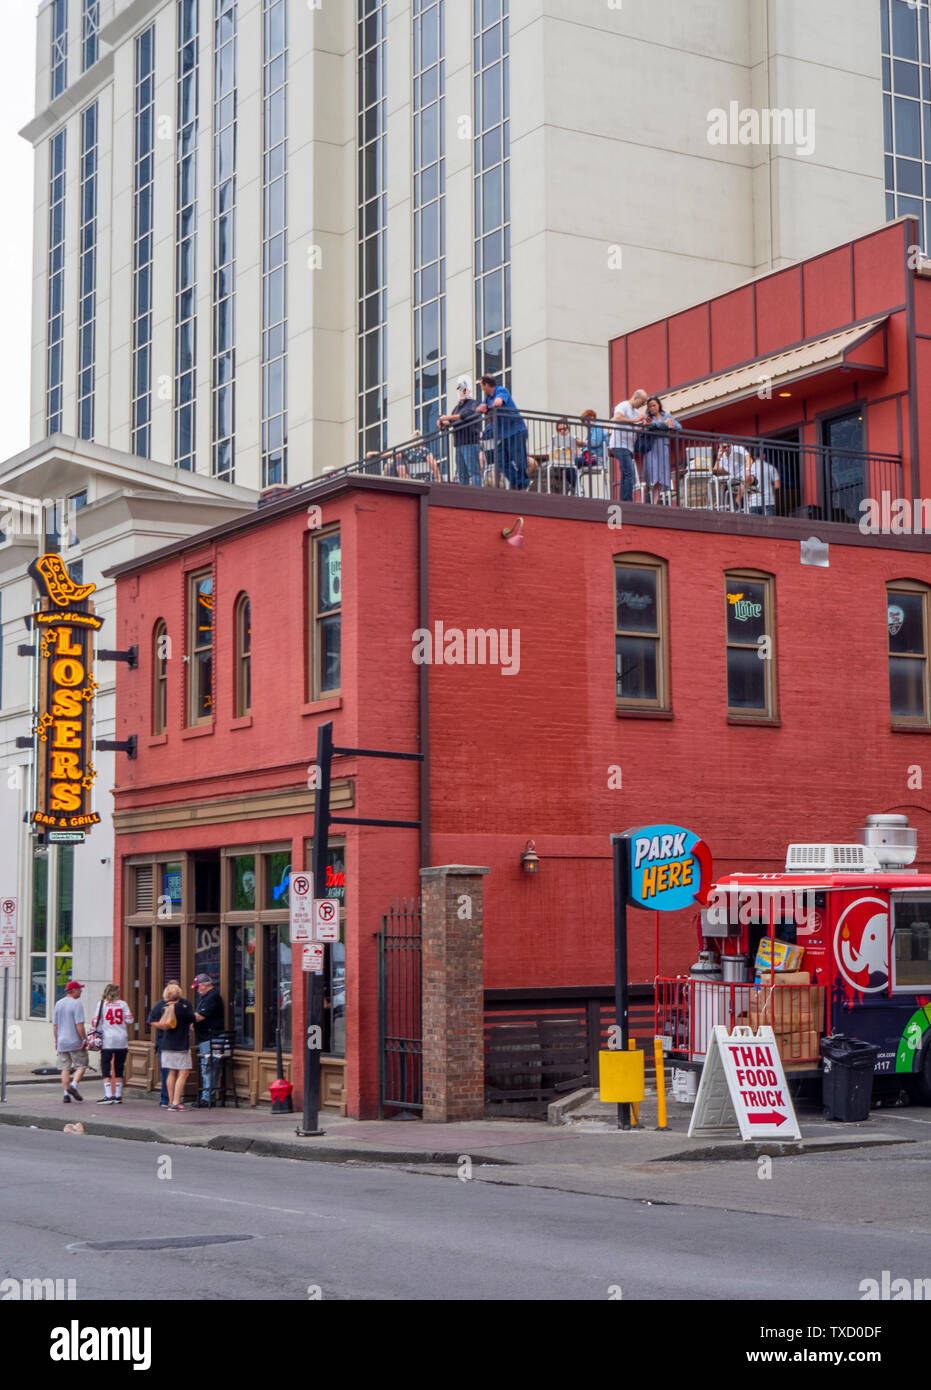 Ventilatoren an den Verlierer Bar und Grill Restaurant und Konzertsaal Bar auf der Dachterrasse während NFL Draft 2019 Nashville Tennessee USA. Stockfoto